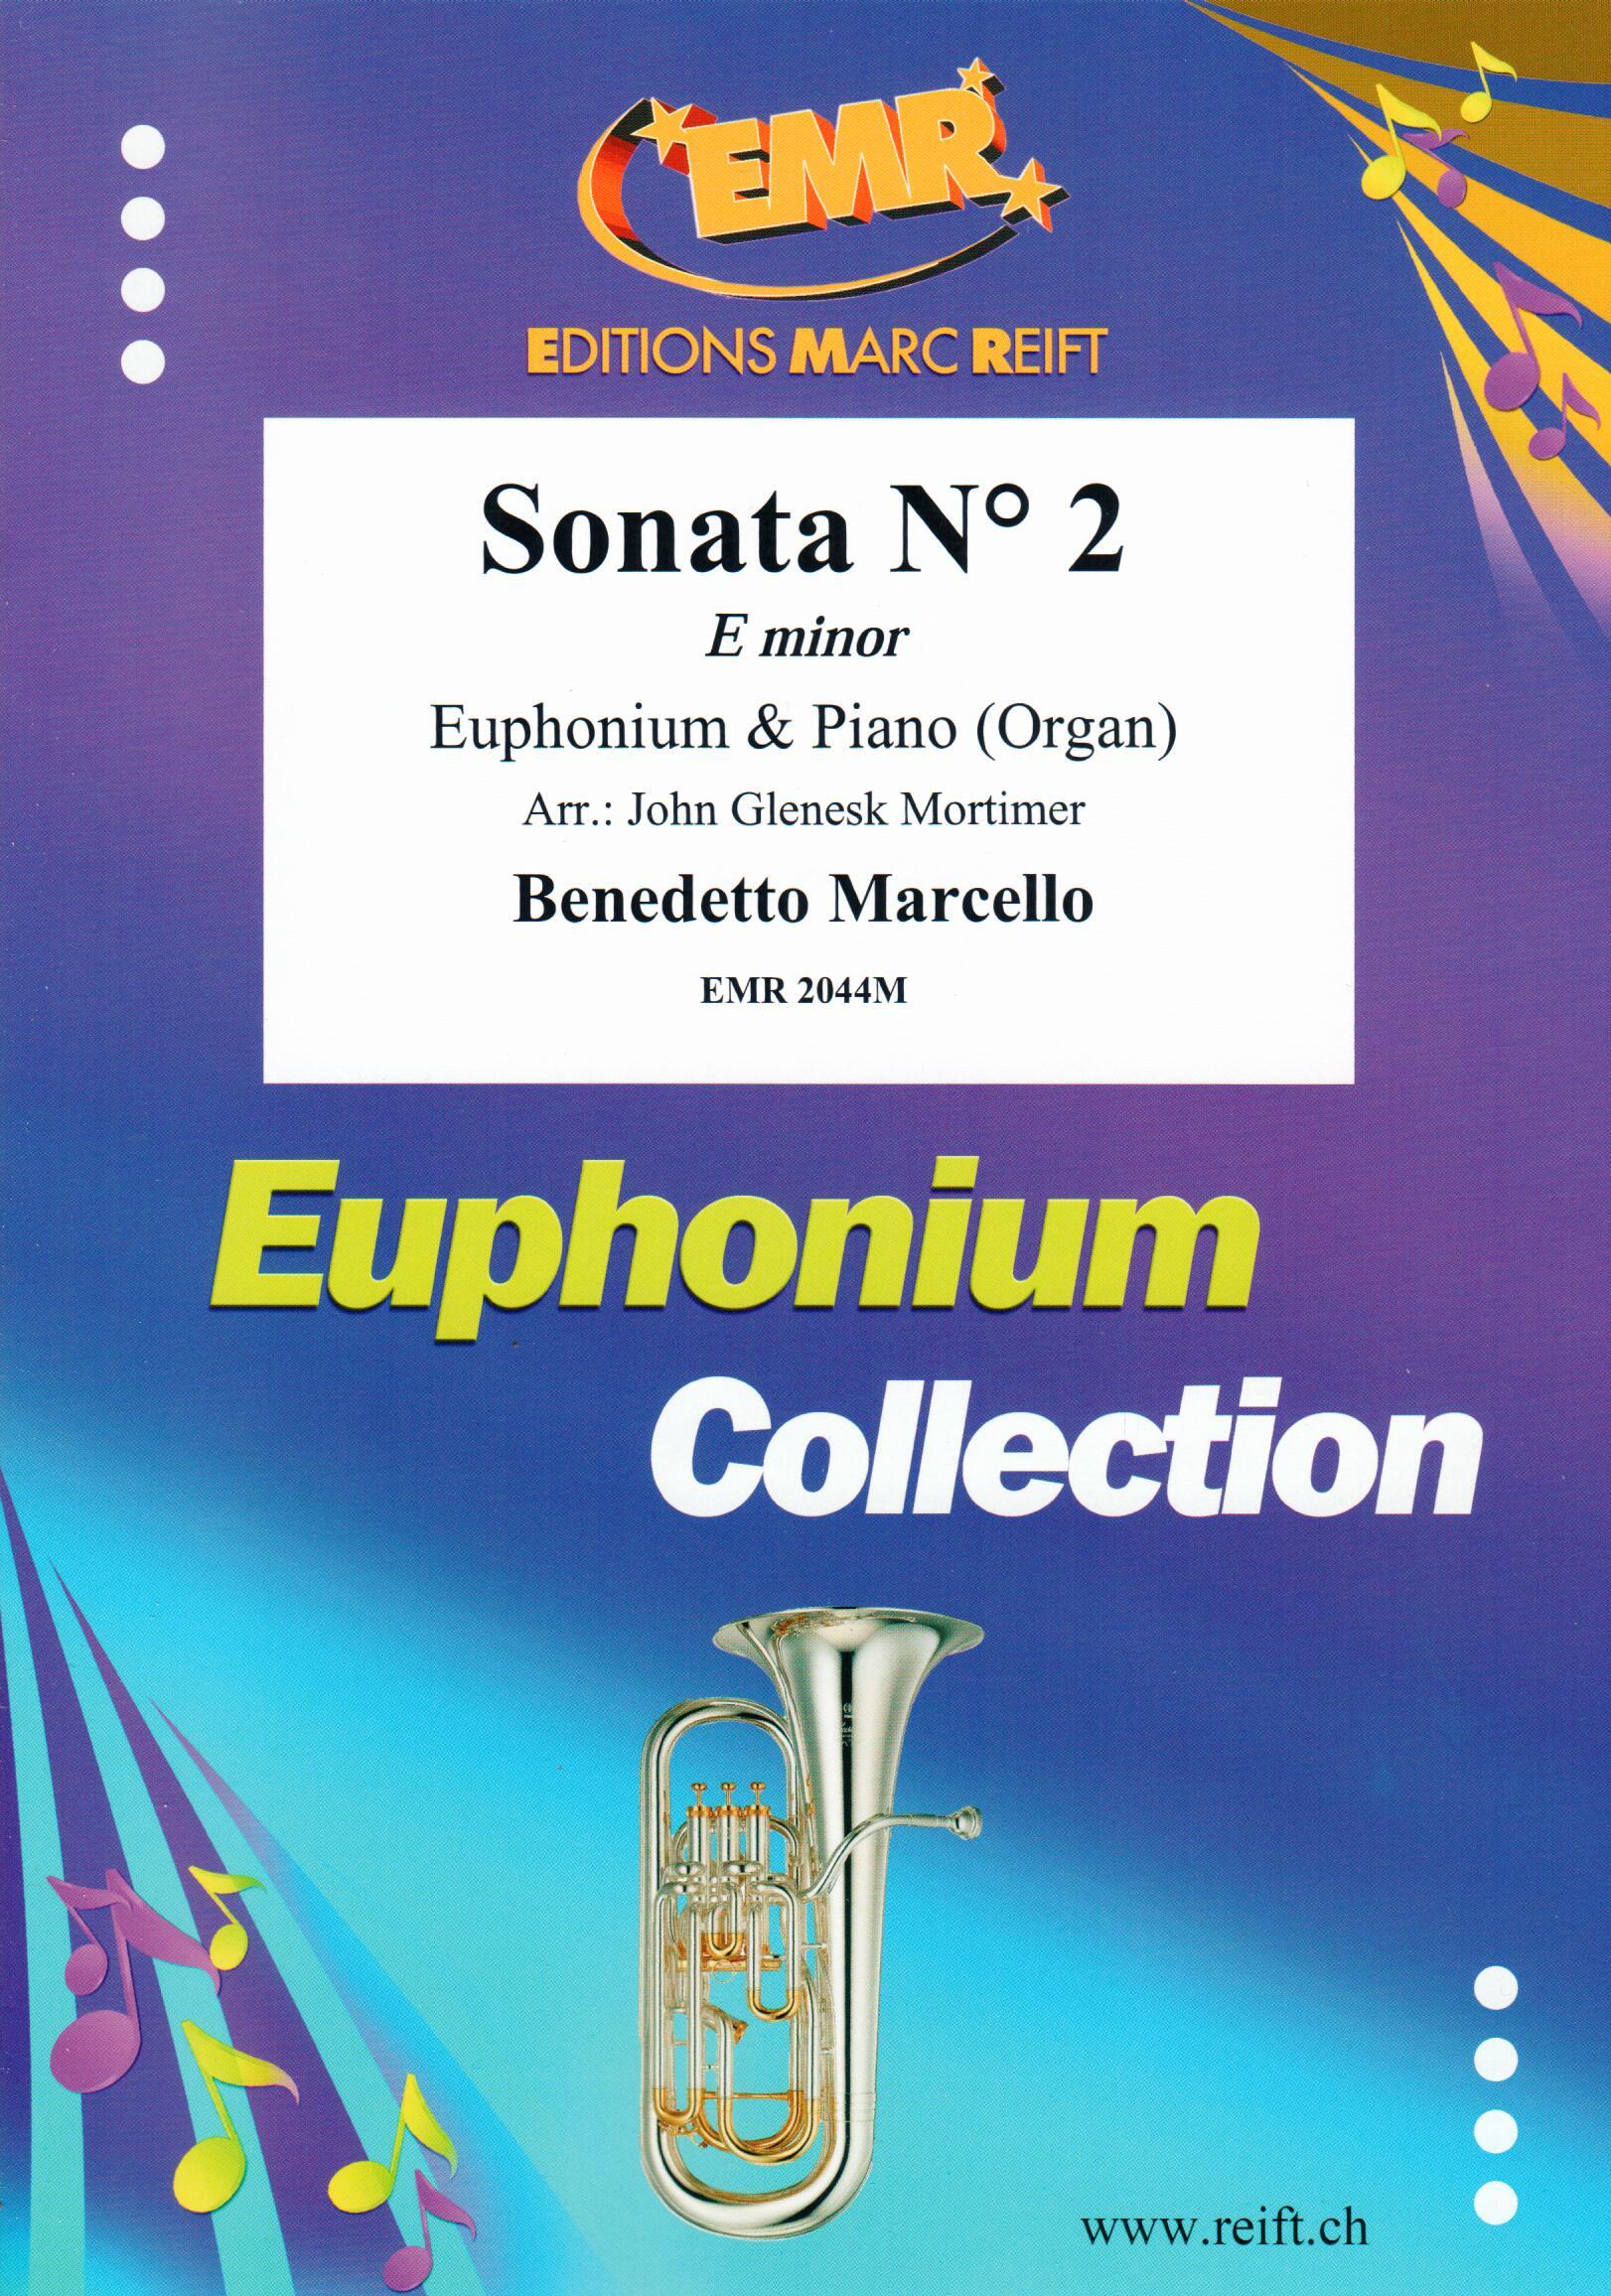 SONATA N° 2 IN E MINOR, SOLOS - Euphonium